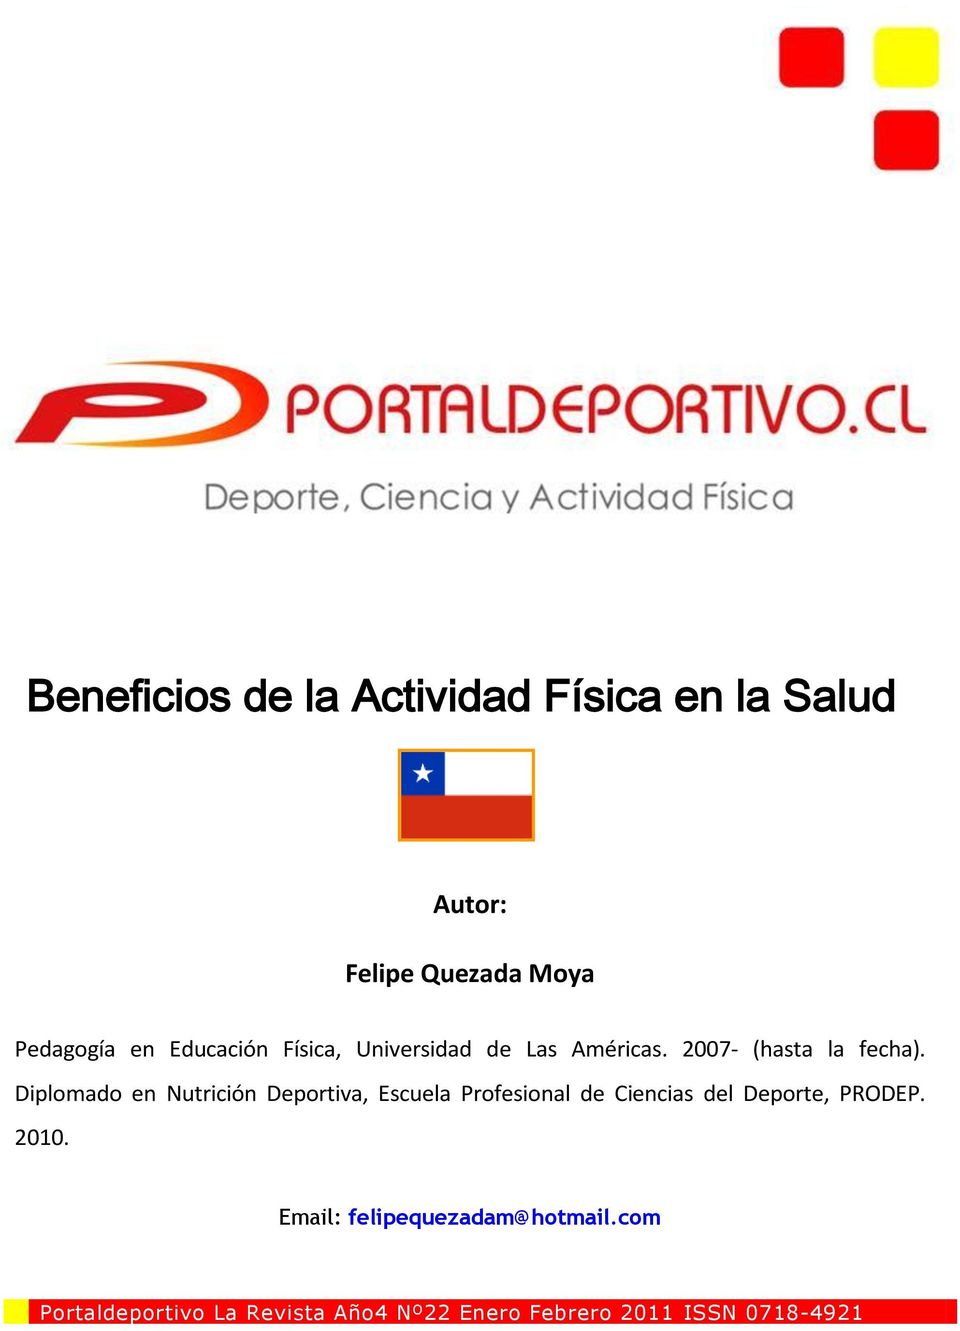 Diplomado en Nutrición Deportiva, Escuela Profesional de Ciencias del Deporte, PRODEP.